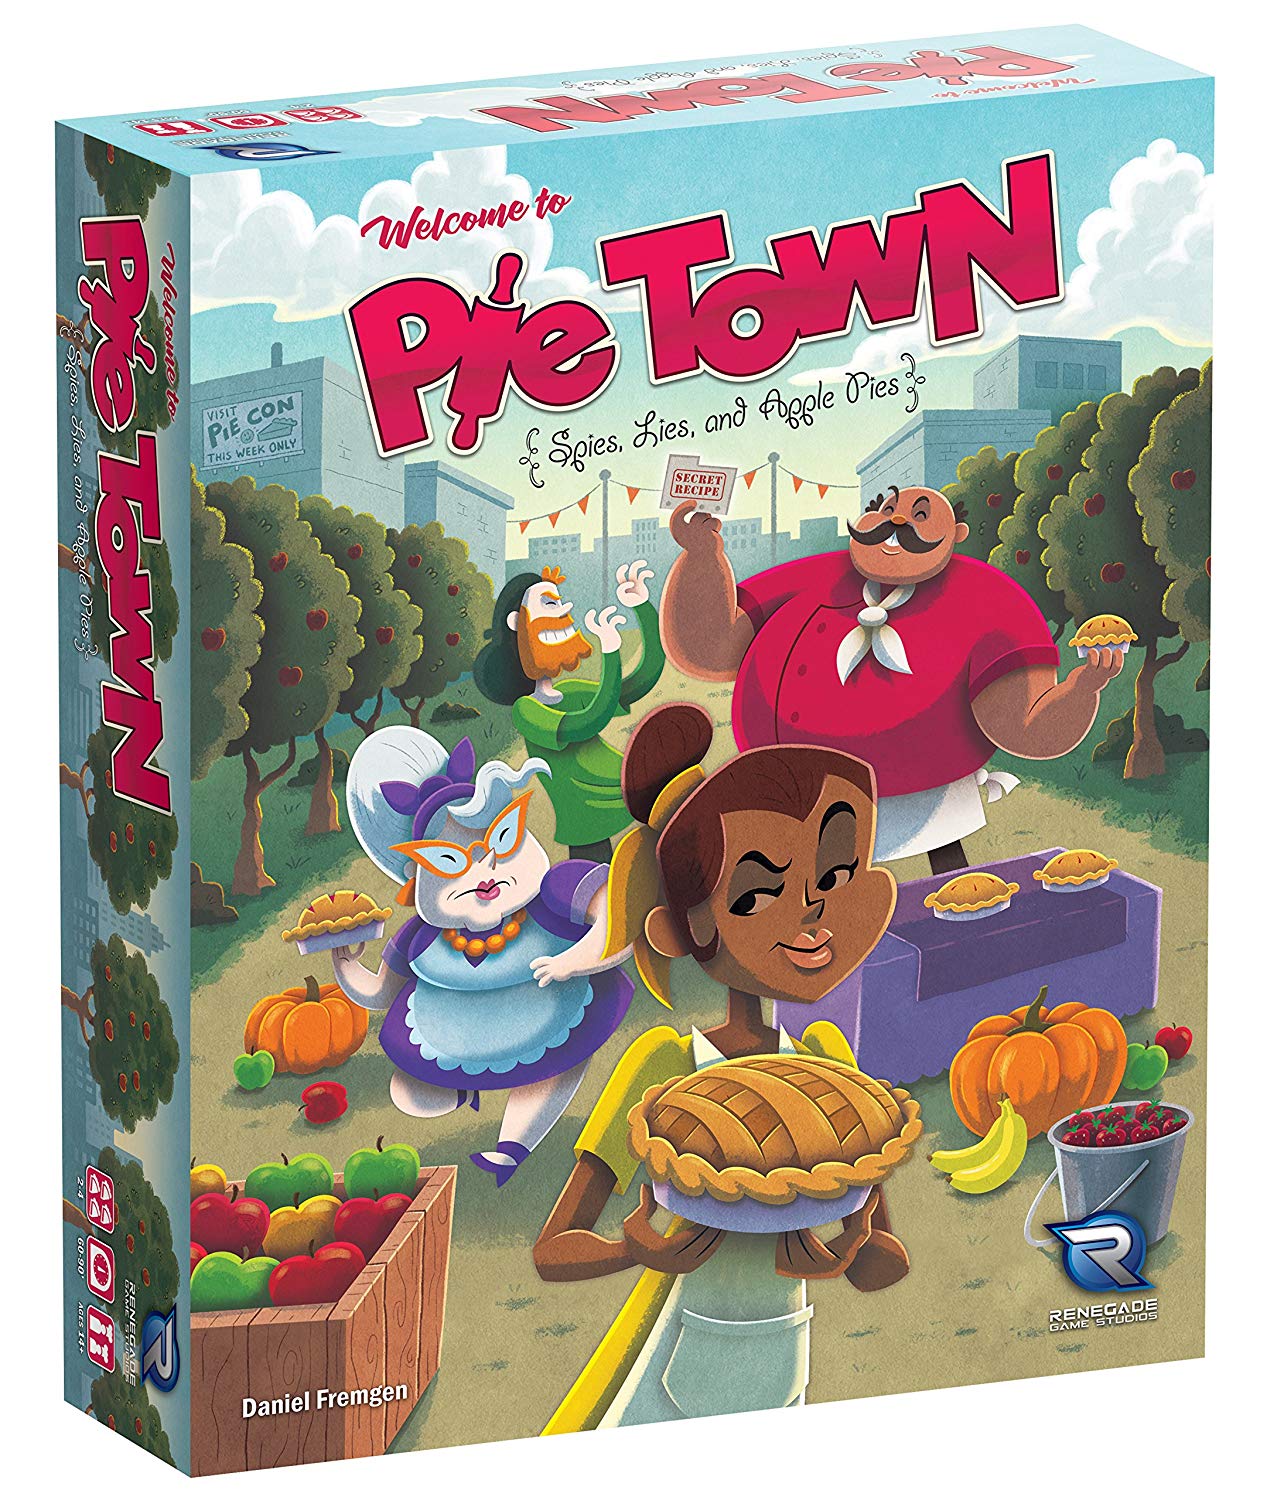 Pie Town